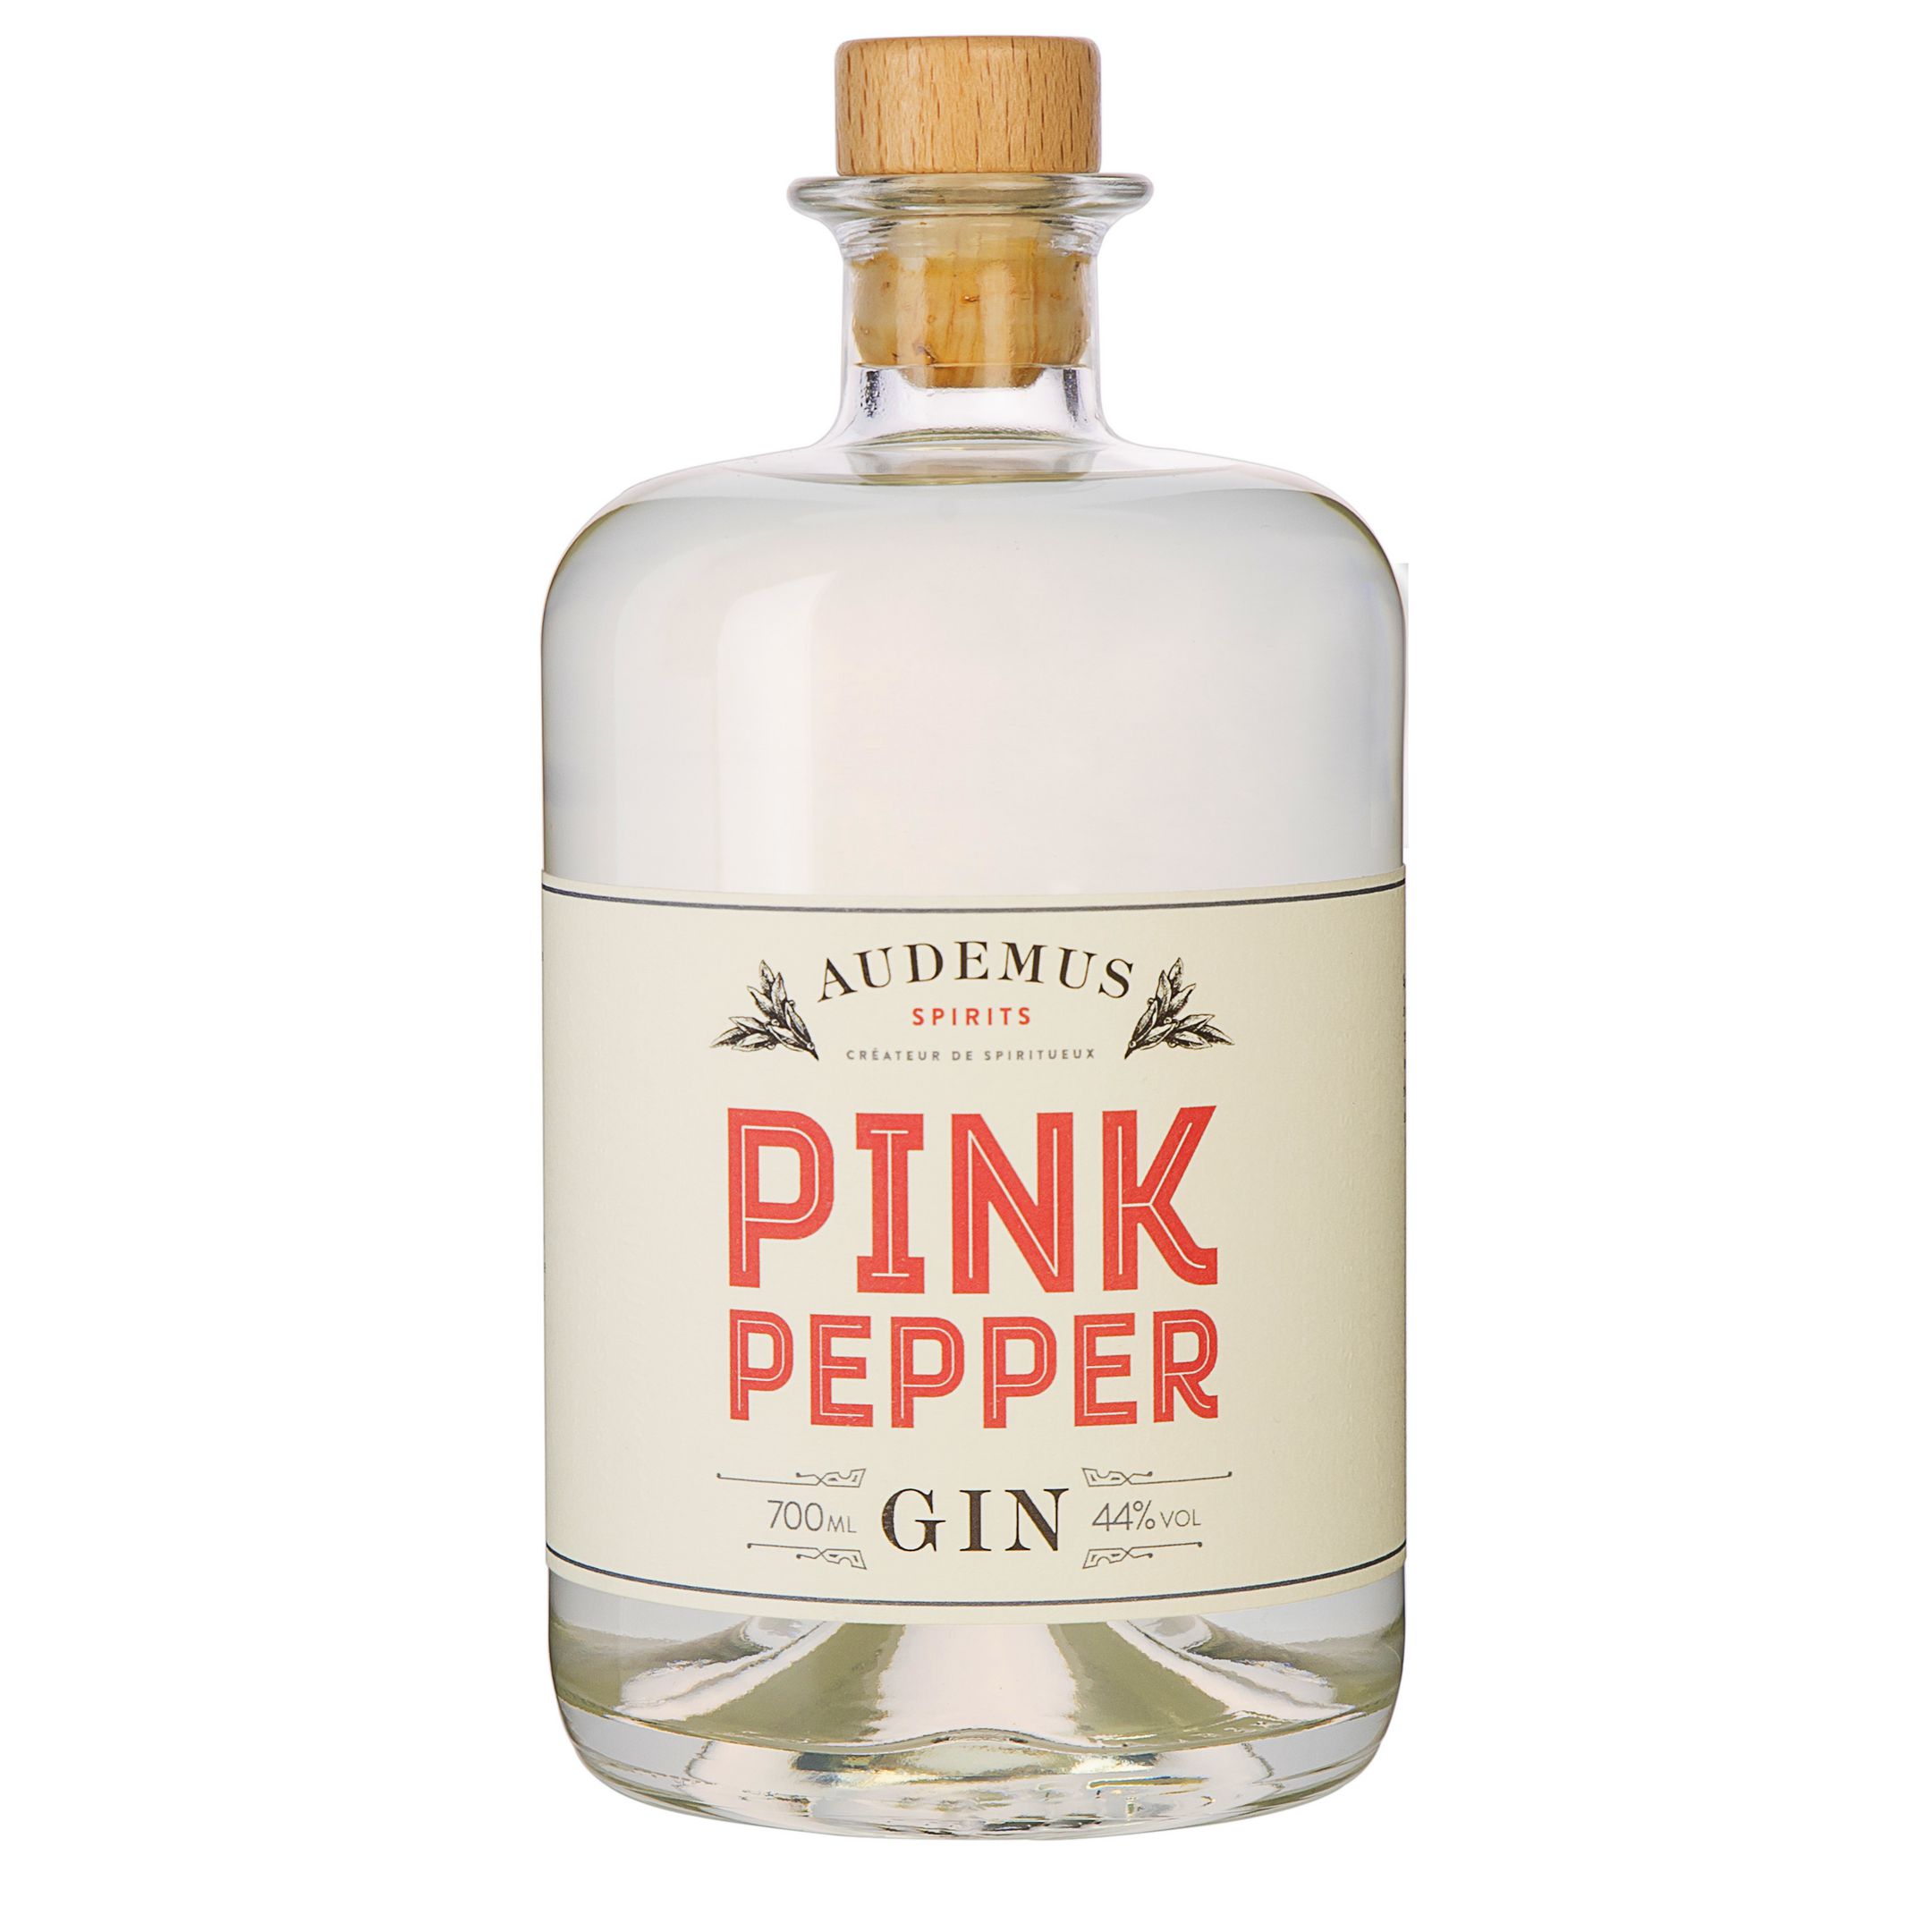 Pink Pepper Gin – Audemus Spirits